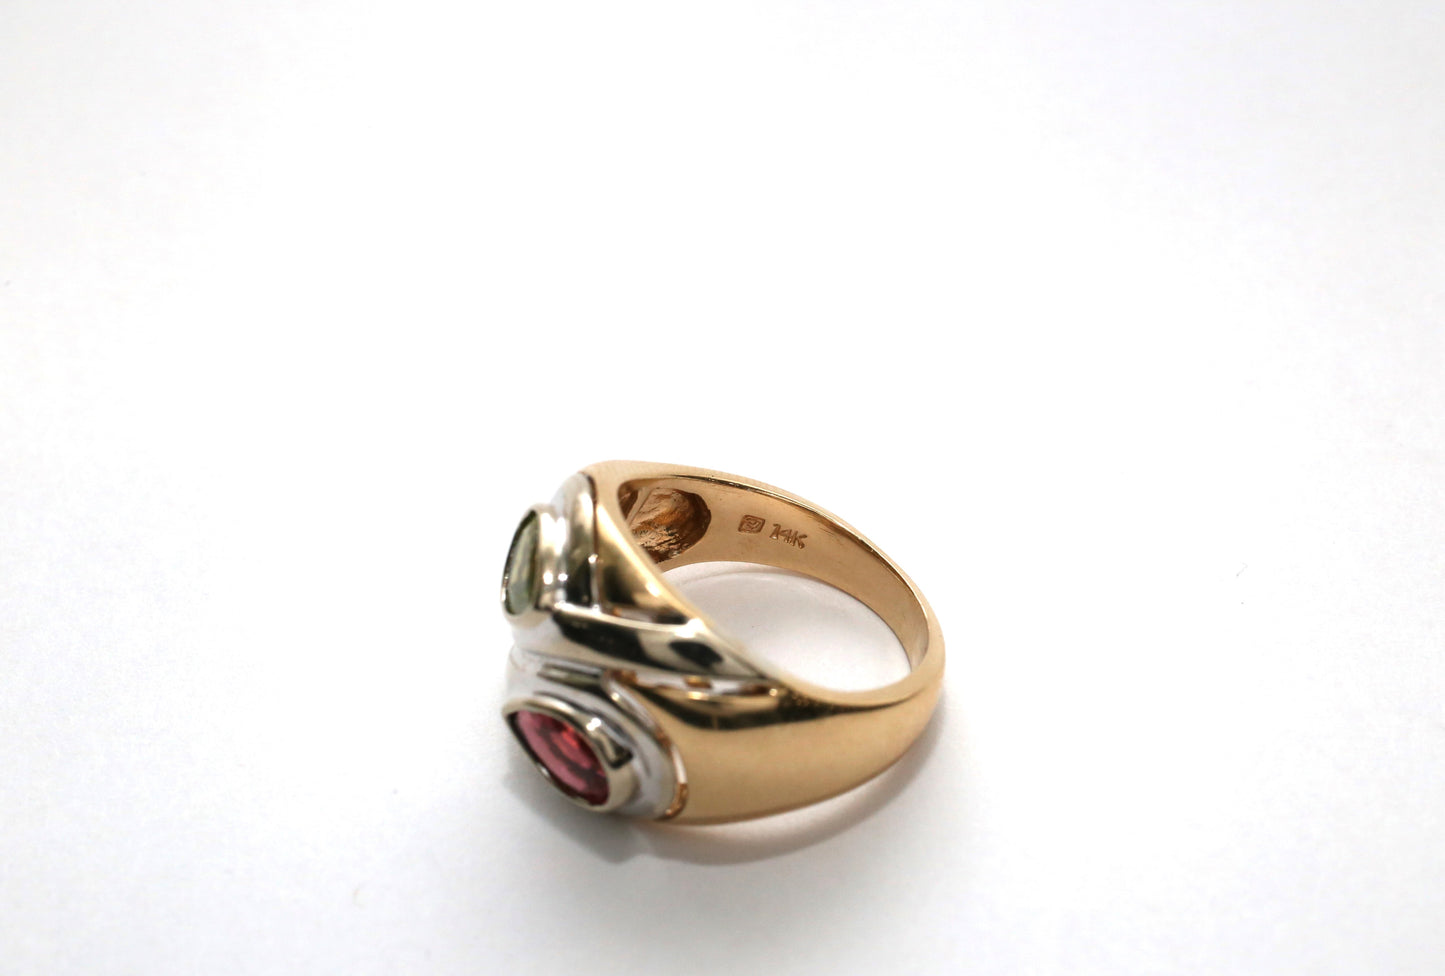 14k Yellow Gold Modern Peridot & Tourmaline Ring, Size 8.25 - 9.5g